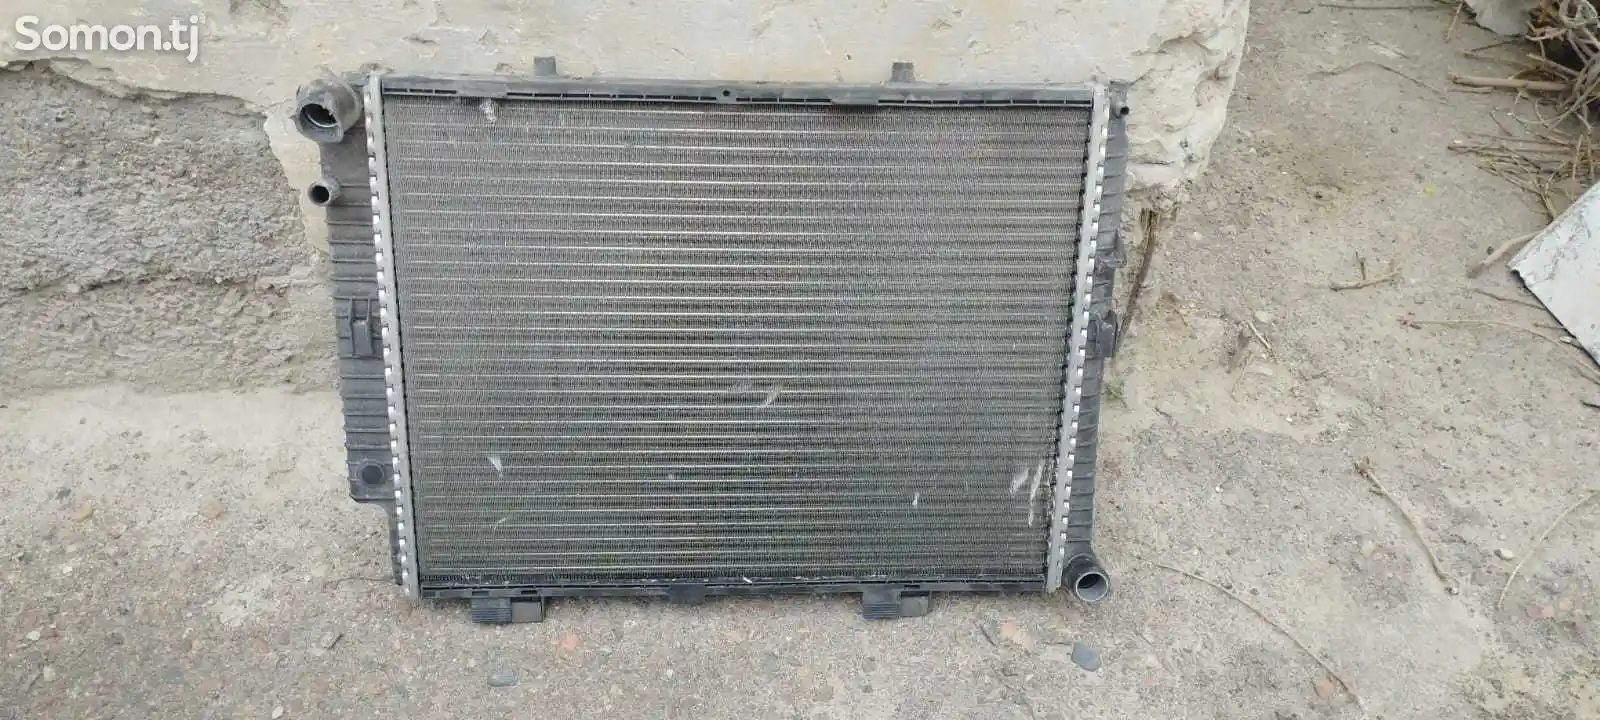 Радиатор для мерседес 210-1